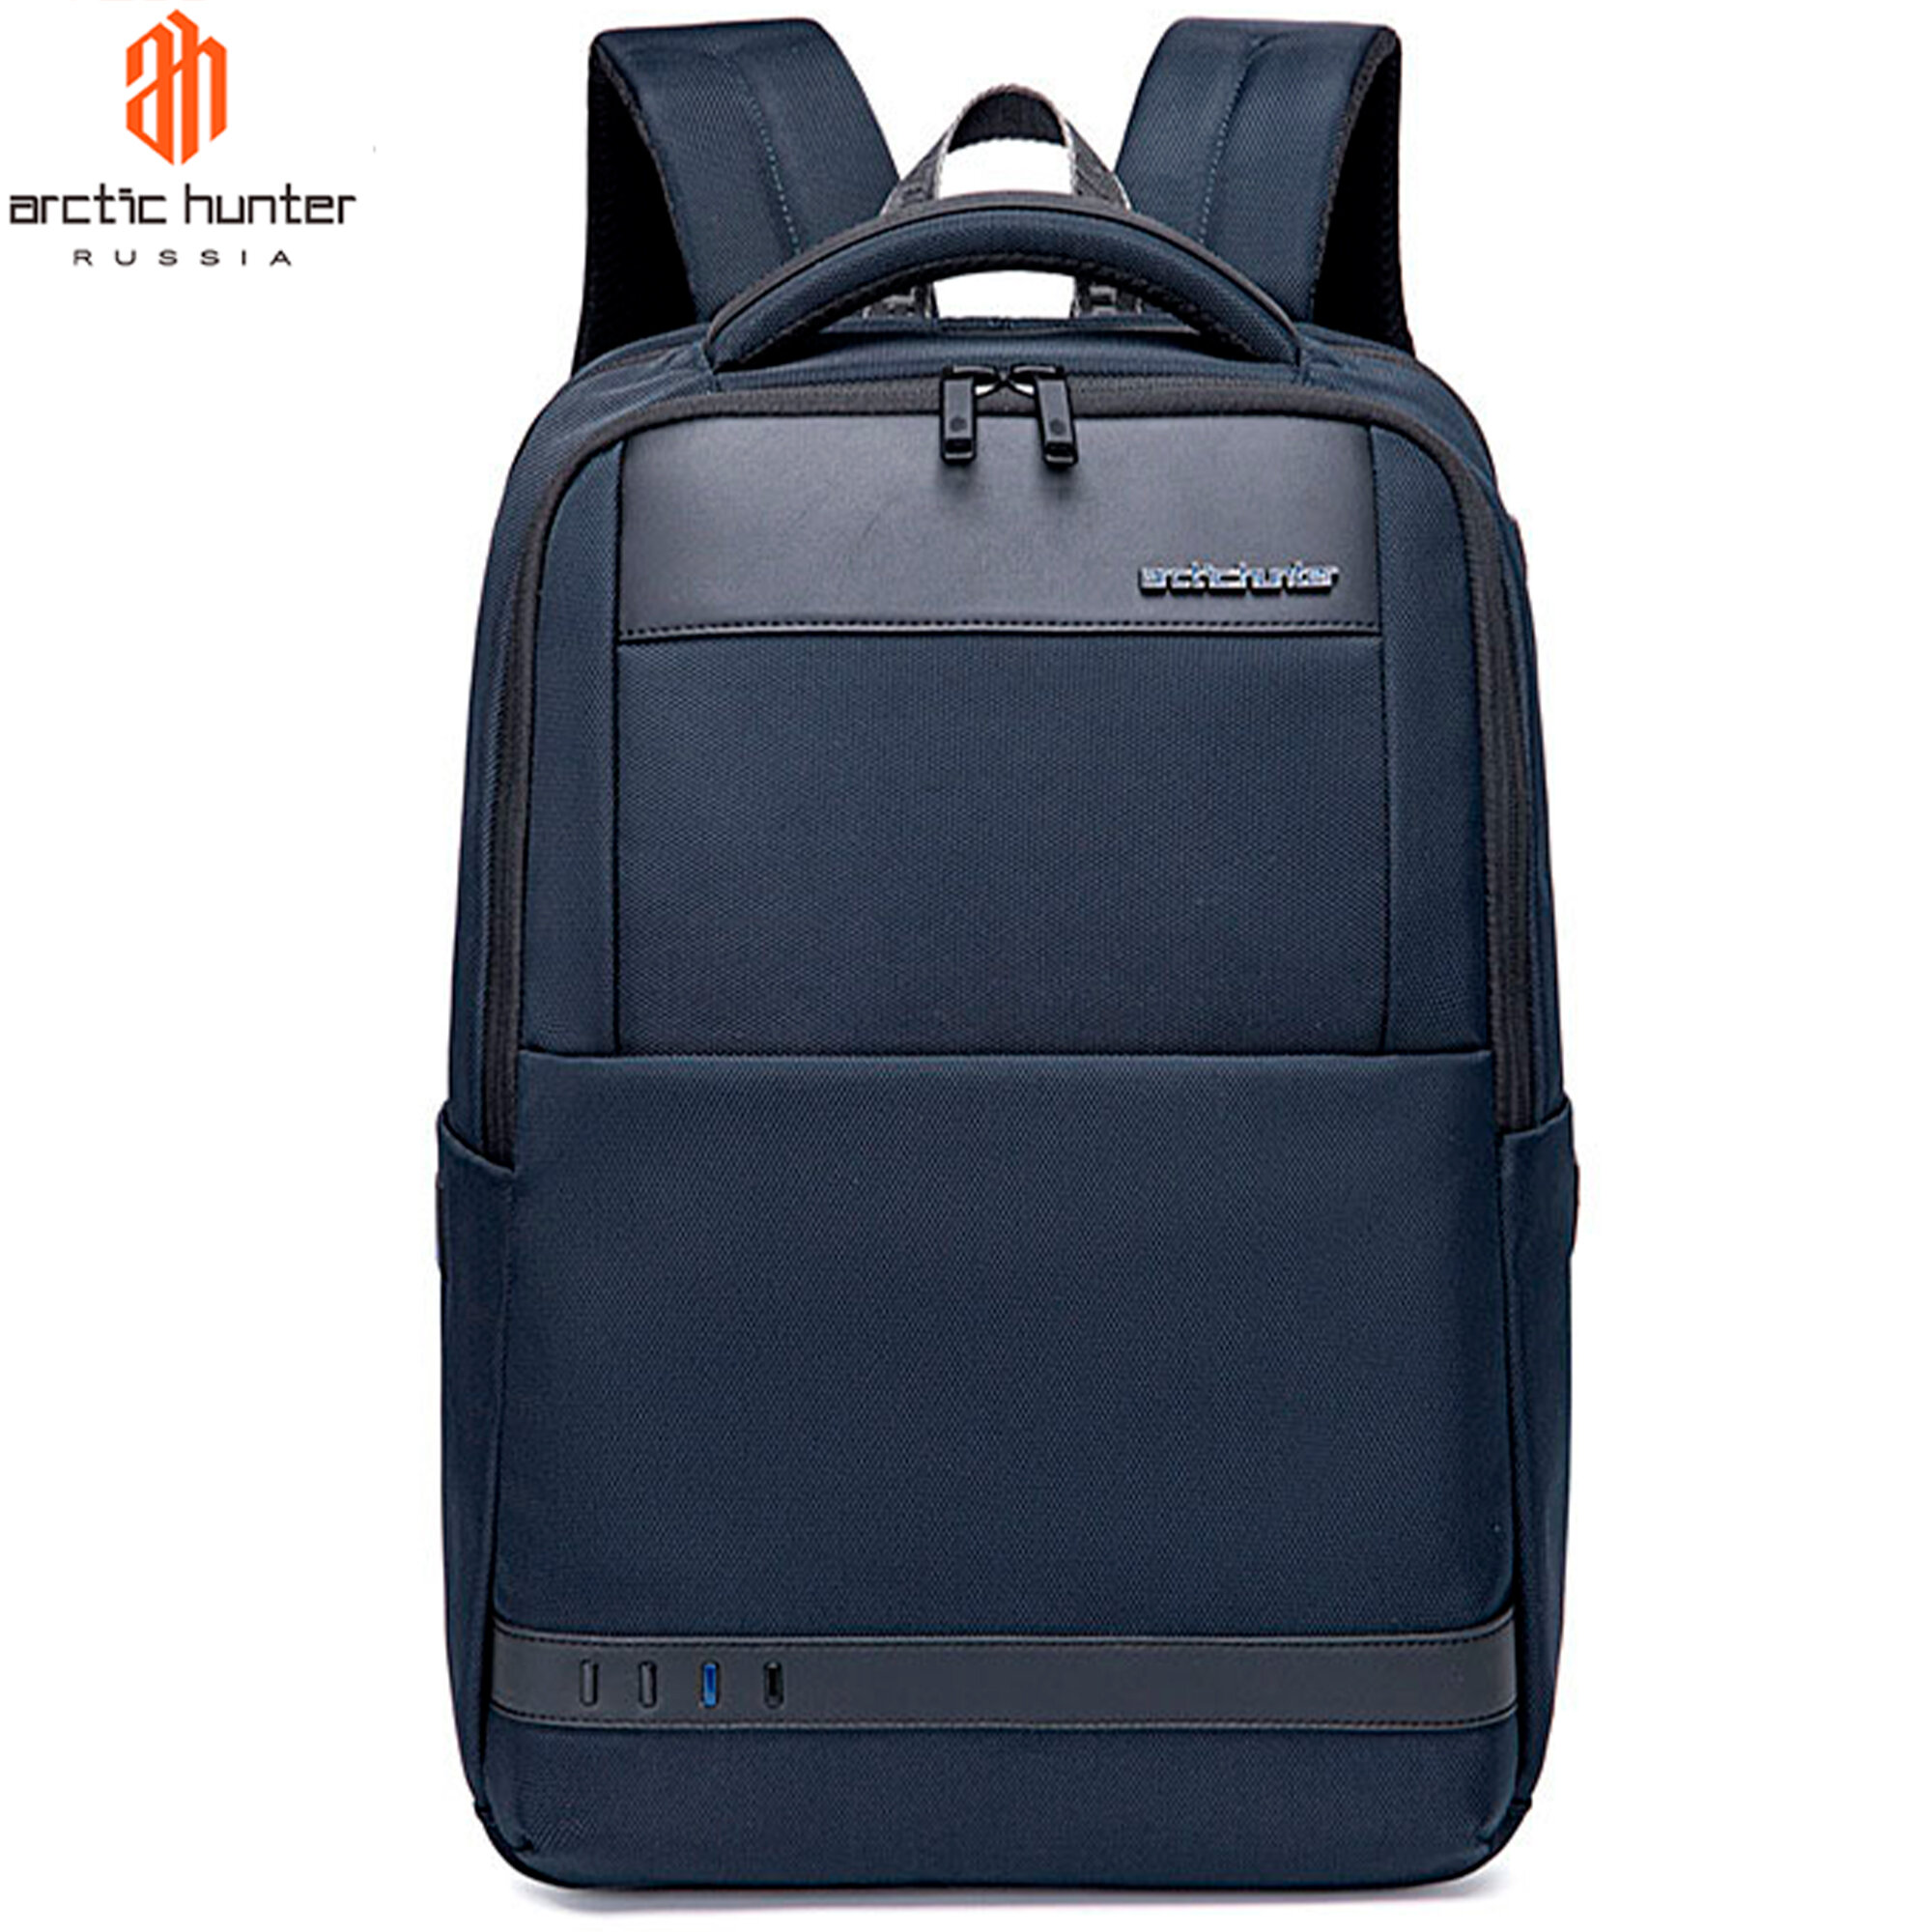 Рюкзак мужской городской, черный, повседневный, водонепроницаемый, школьный, для путешествий, для ноутбука, 22 л, Arctic Hunter синий